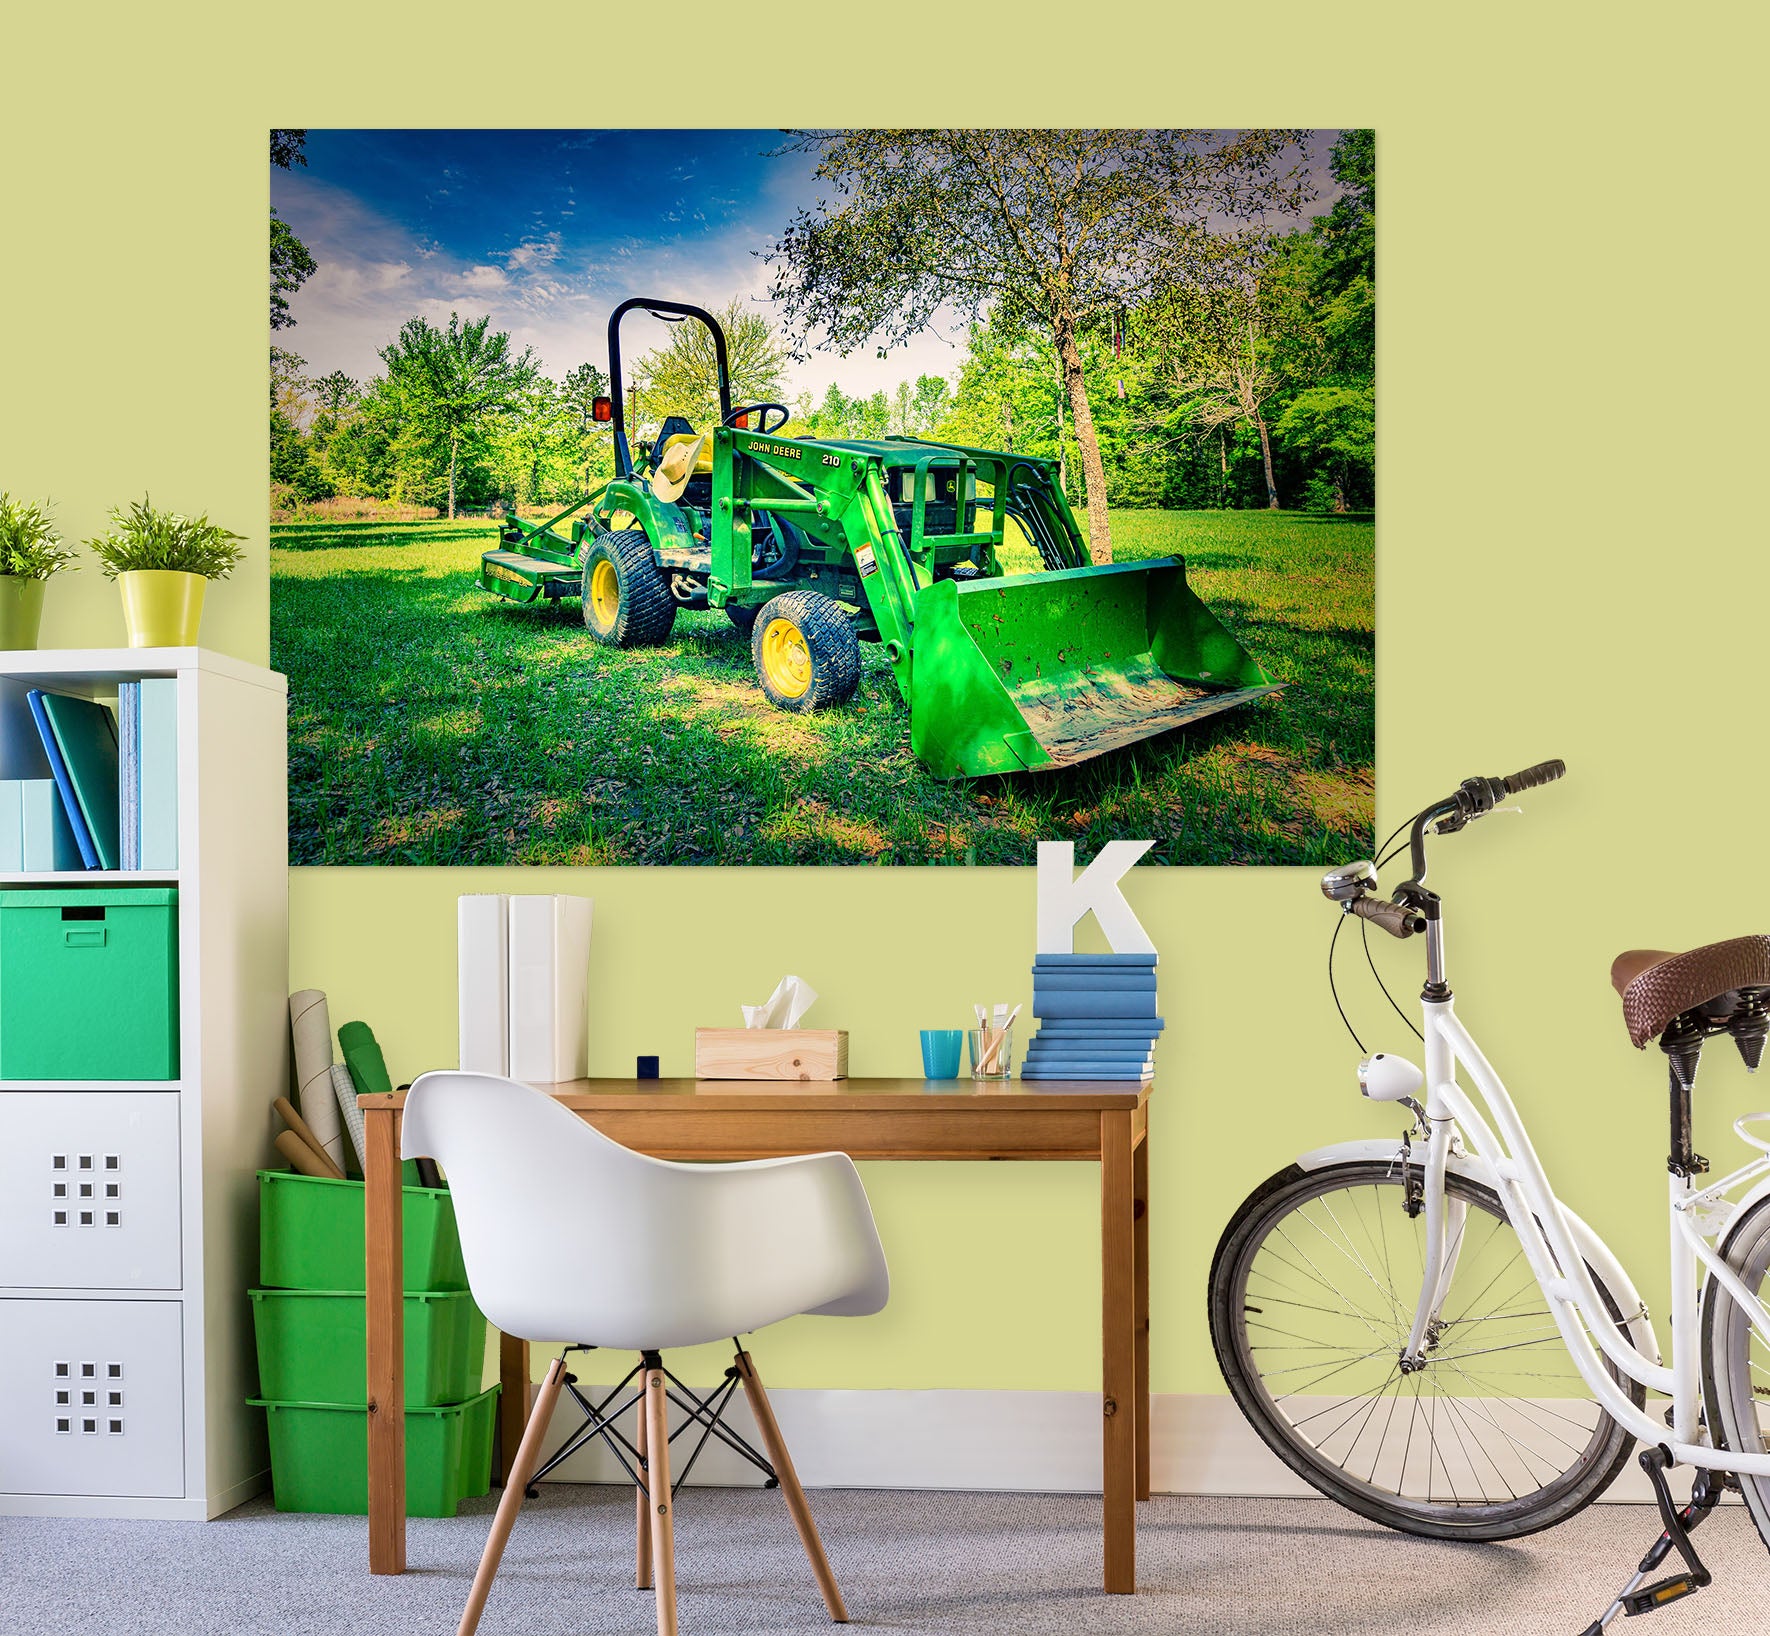 3D Lawn Tractor 4021 Beth Sheridan Wall Sticker